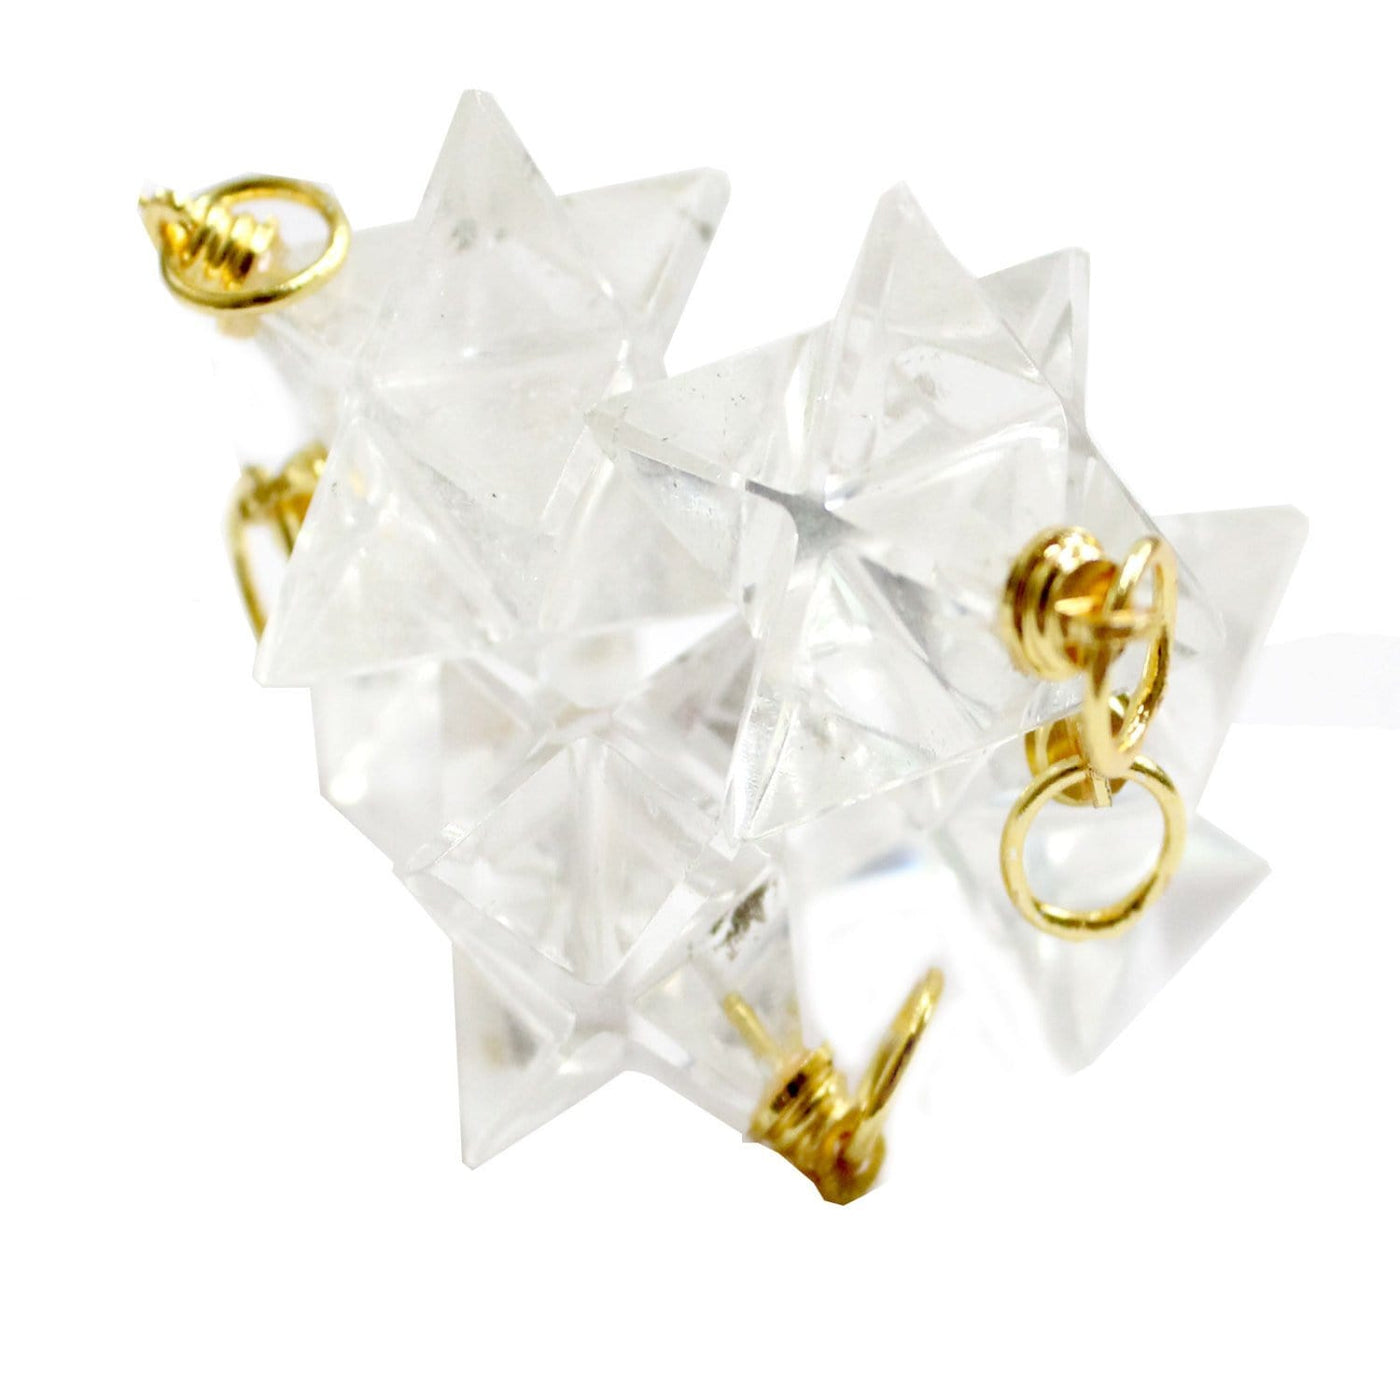 crystal quartz merkaba star pendants on white background